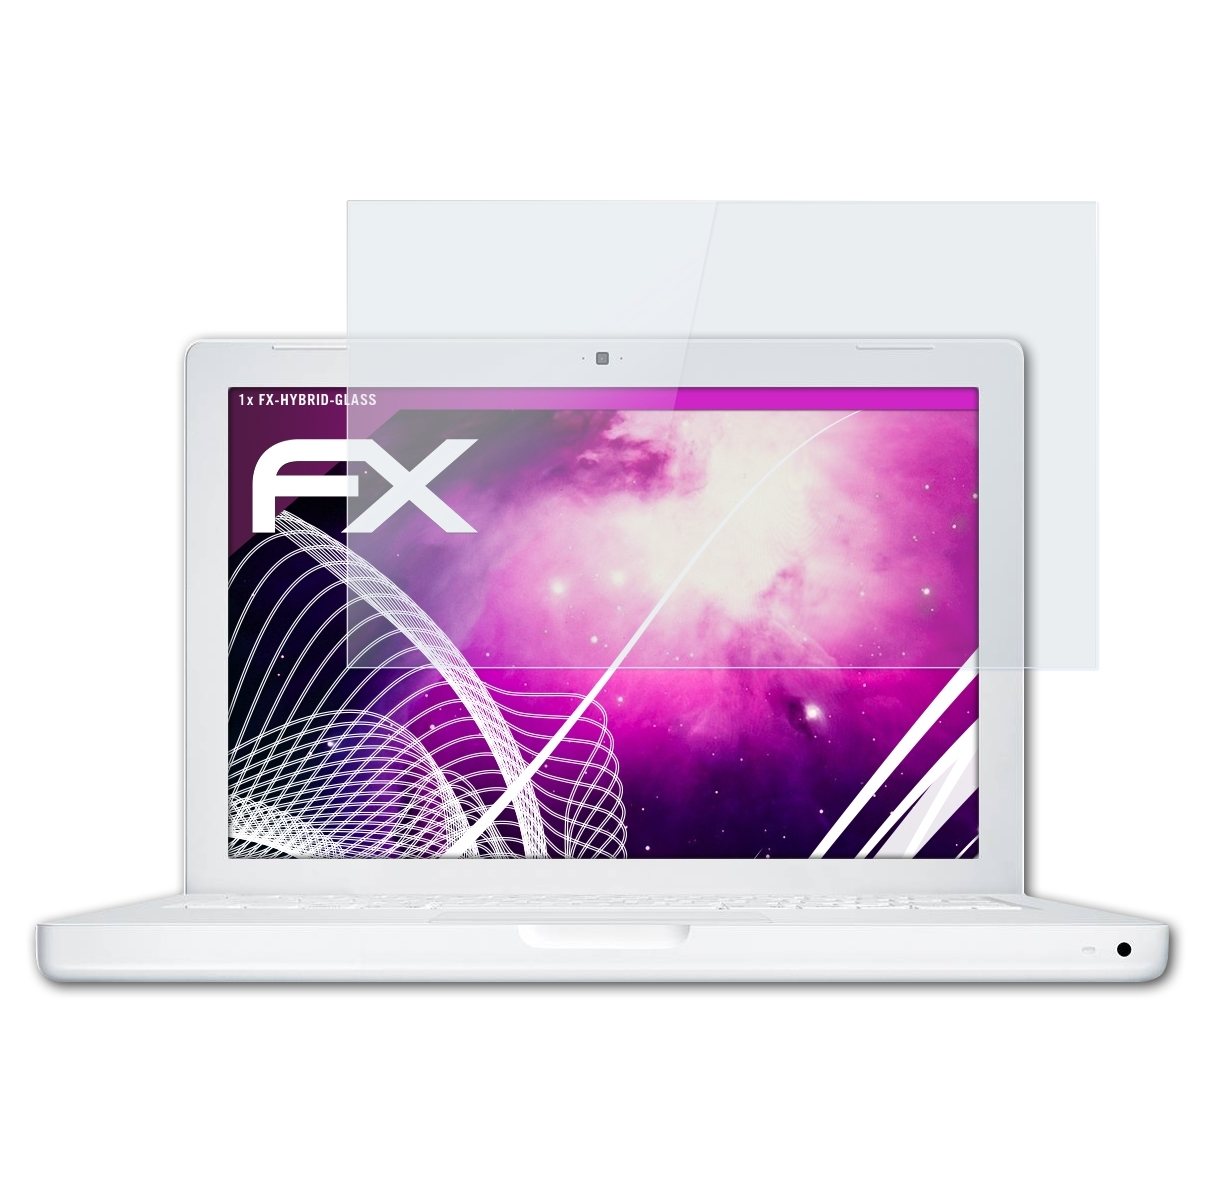 13,3 White Apple WXGA) FX-Hybrid-Glass Schutzglas(für ATFOLIX MacBook